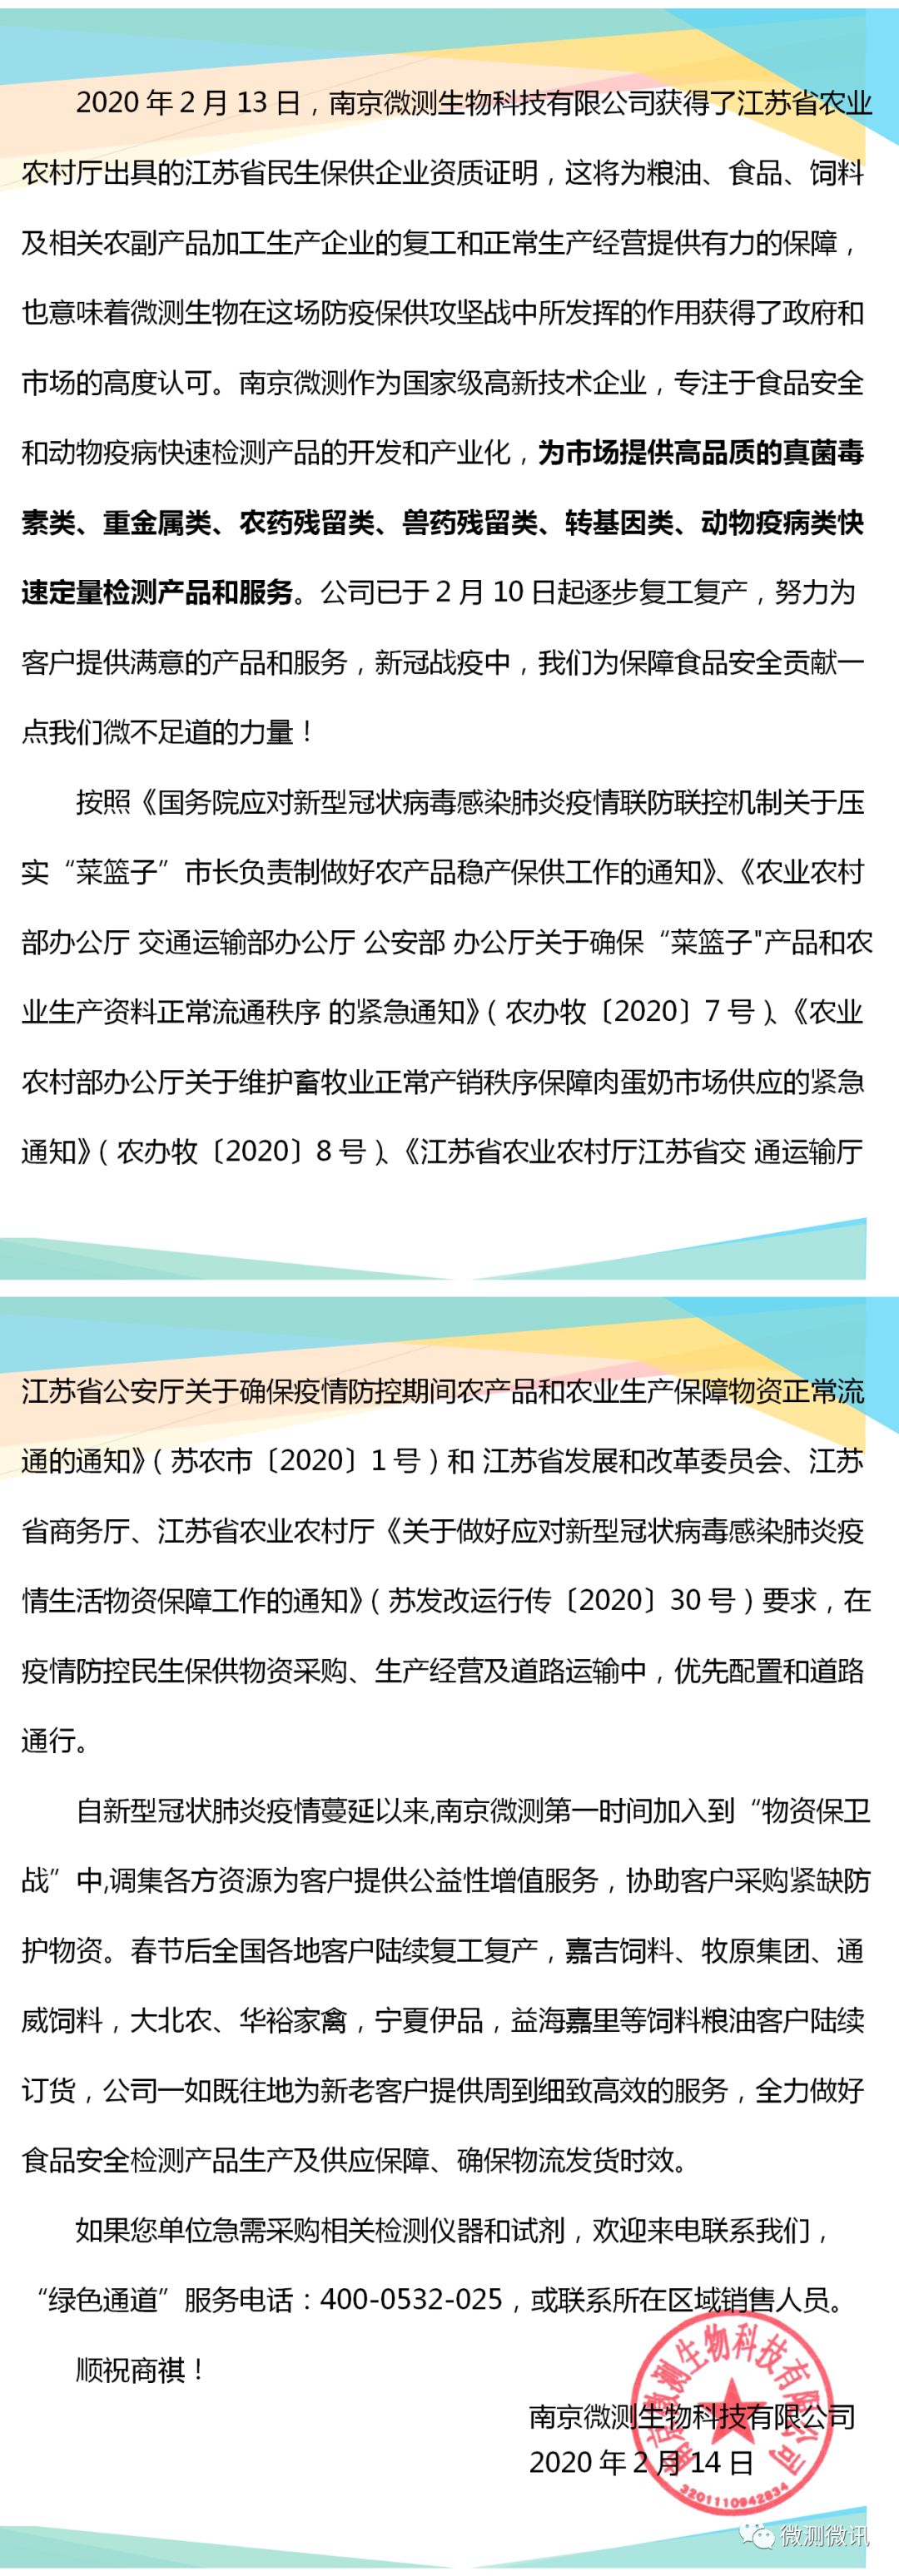 南京微测(上海飞测)获得江苏省农业农村厅出具的民生保供企业资质证明